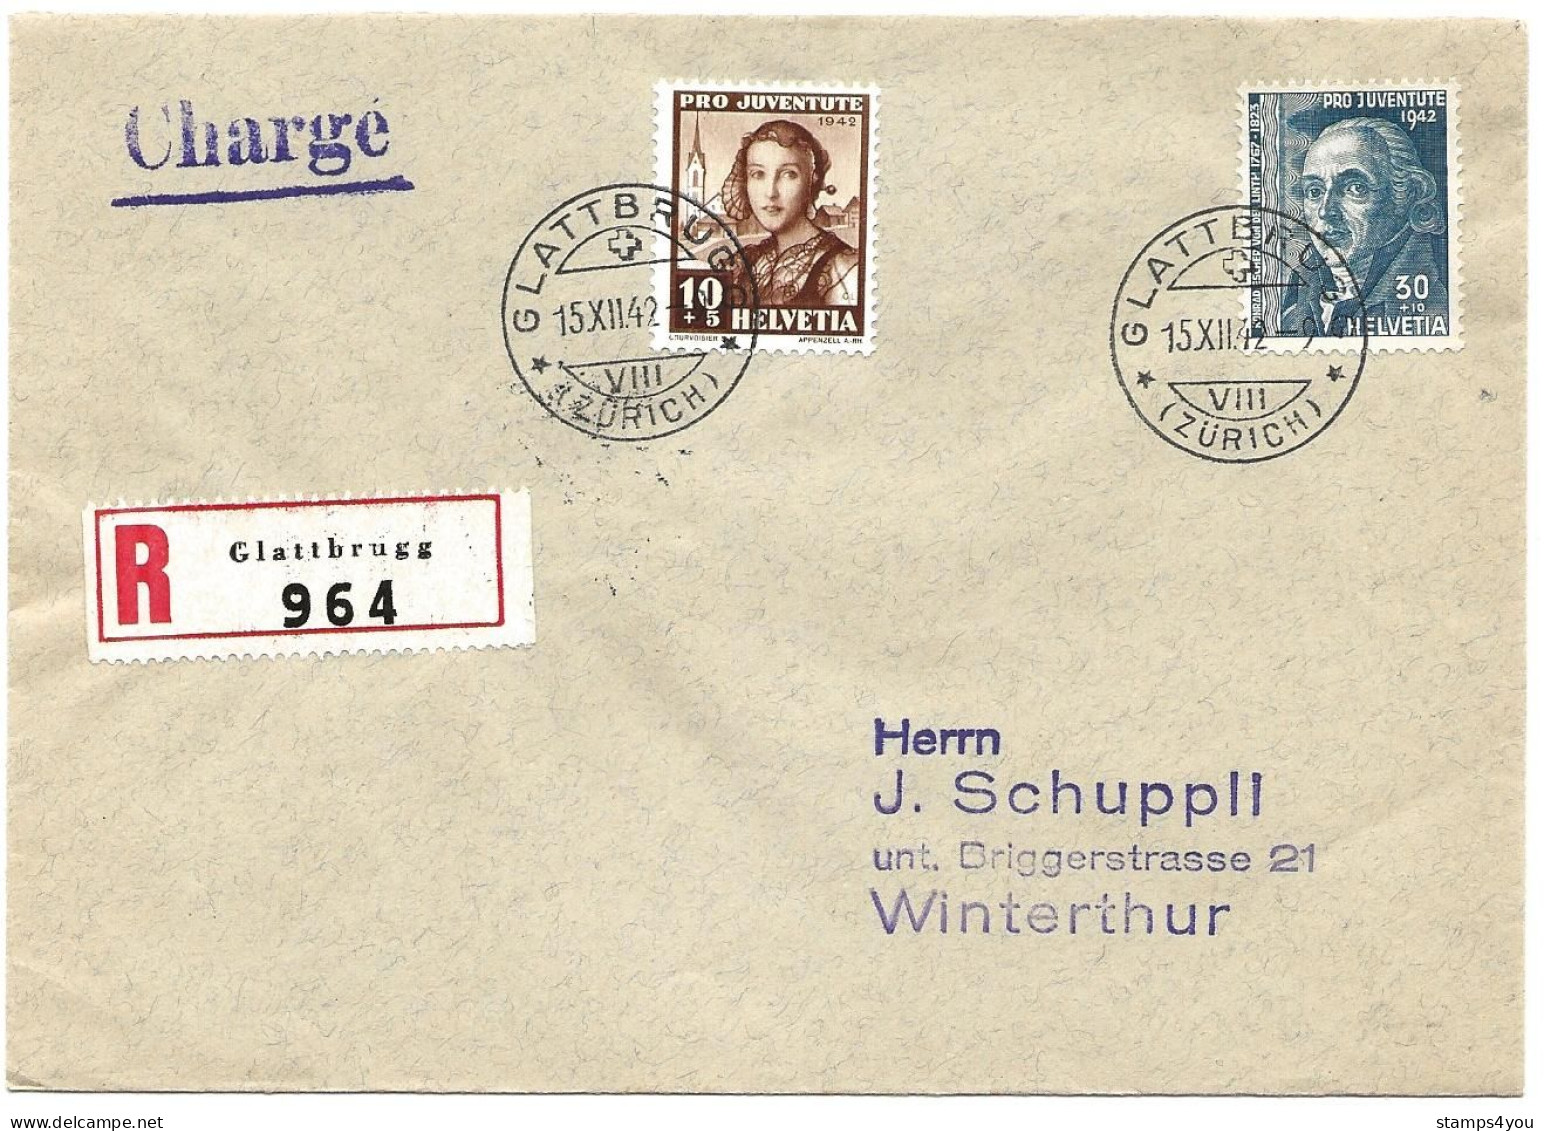 100 - 12 - Enveloppe Recommandée Envoyée De Glattbrugg 1942 - Timbres Pro Juventute - Storia Postale